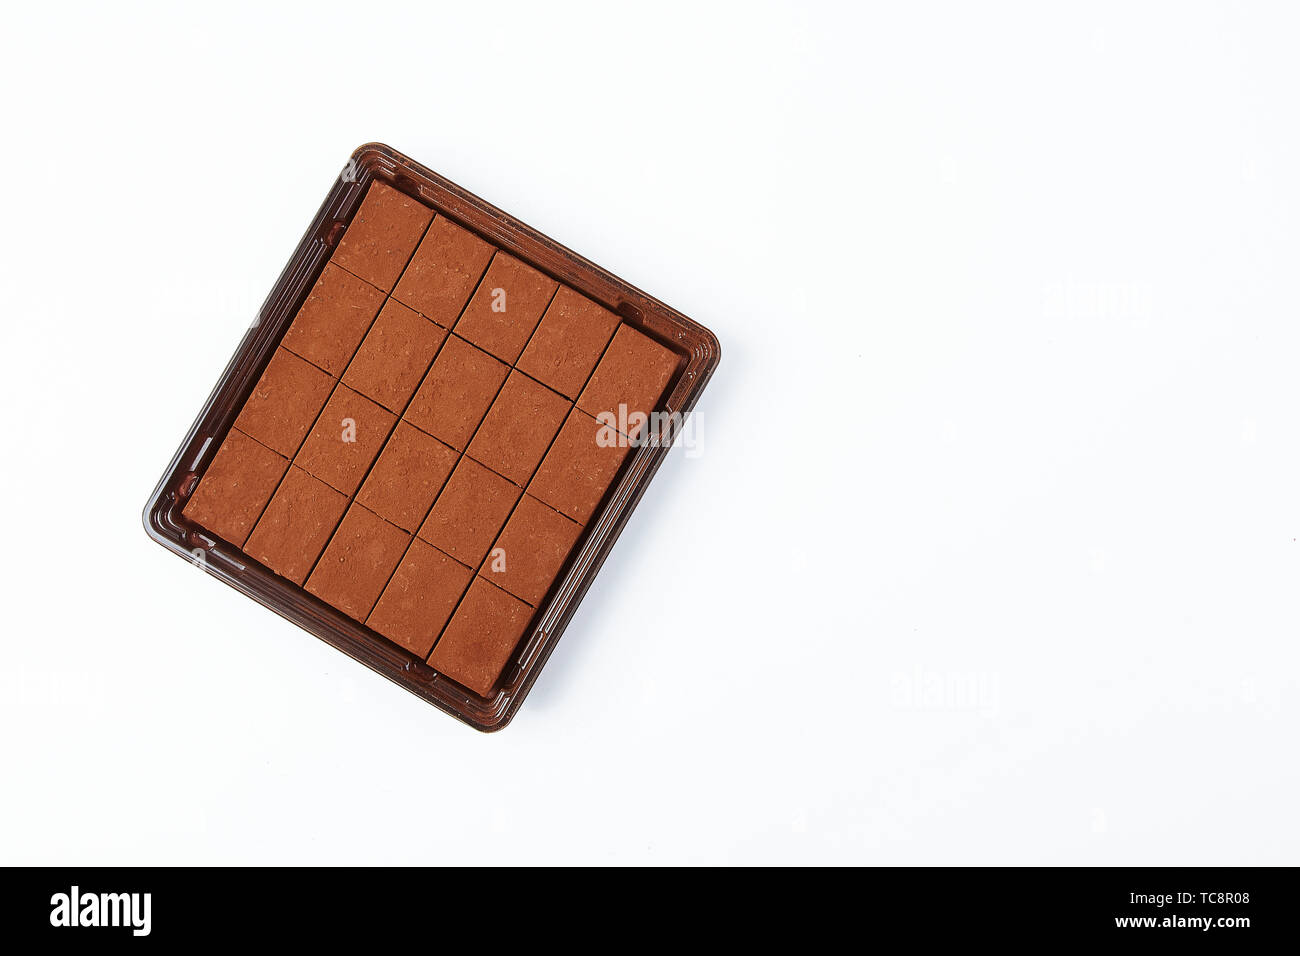 Un bon arrangement des chocolats. Banque D'Images